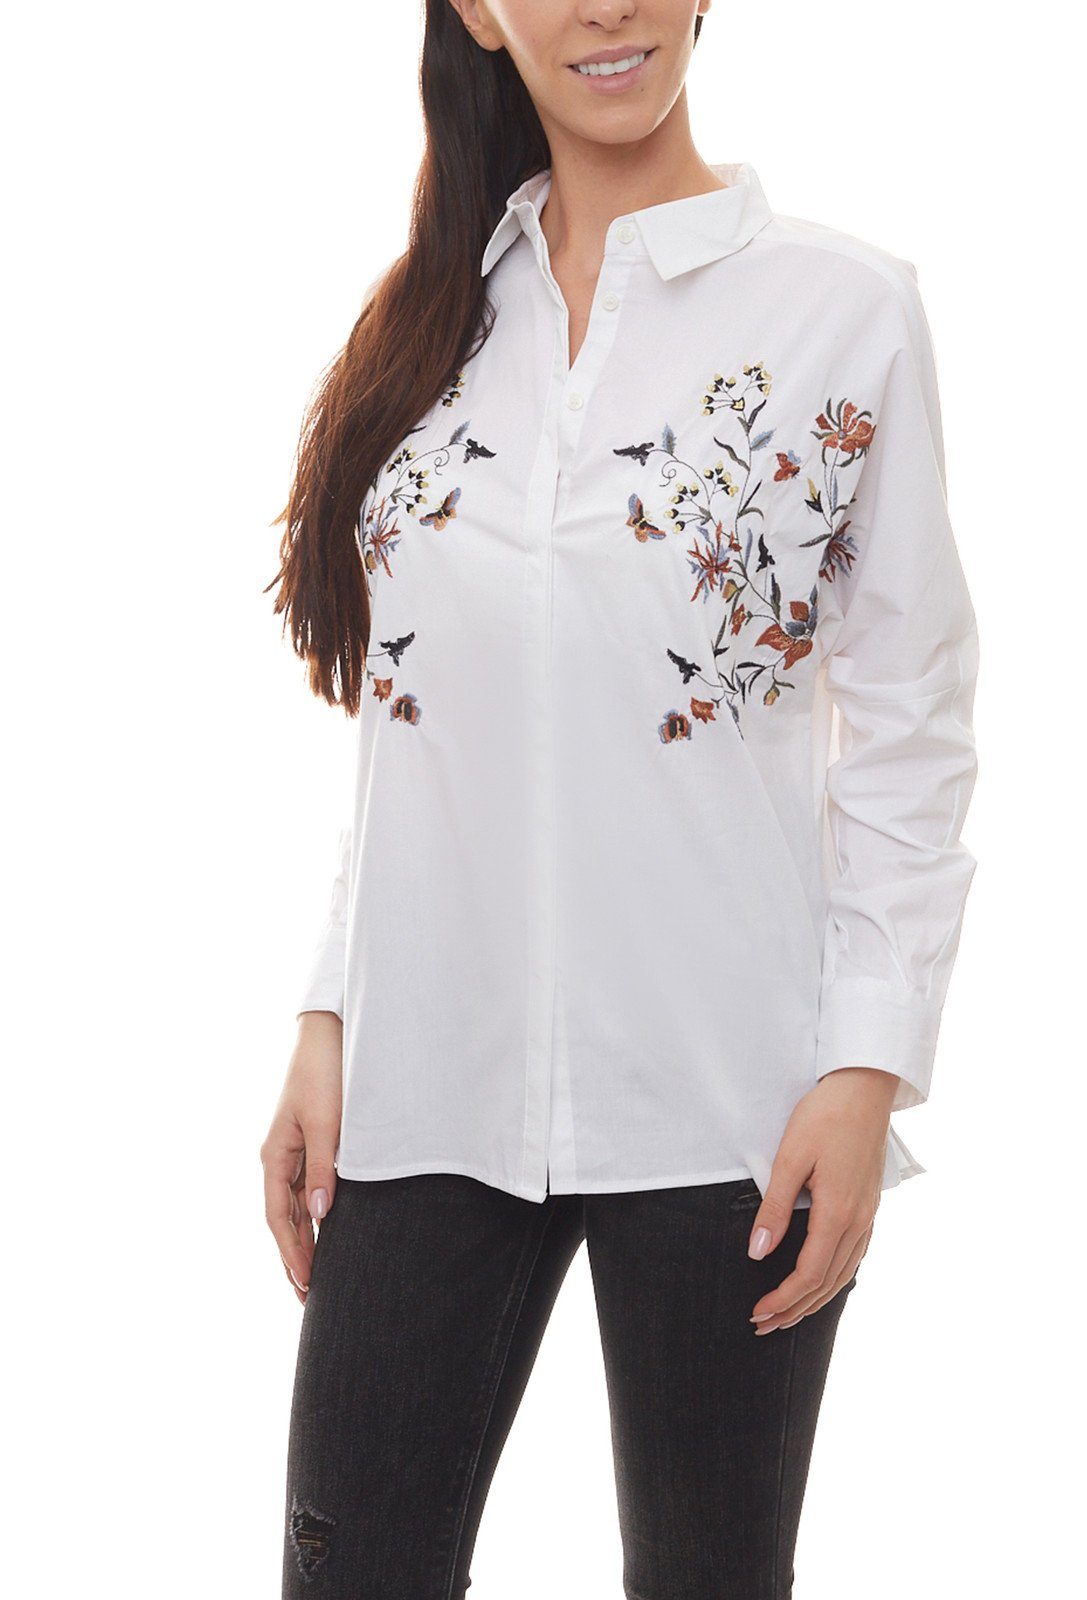 CLAIRE WOMAN Blusentop CLAIRE WOMAN Bluse glänzende Damen Sommer-Bluse mit  langen Ärmeln und Stickereien Freizeit-Bluse Weiß